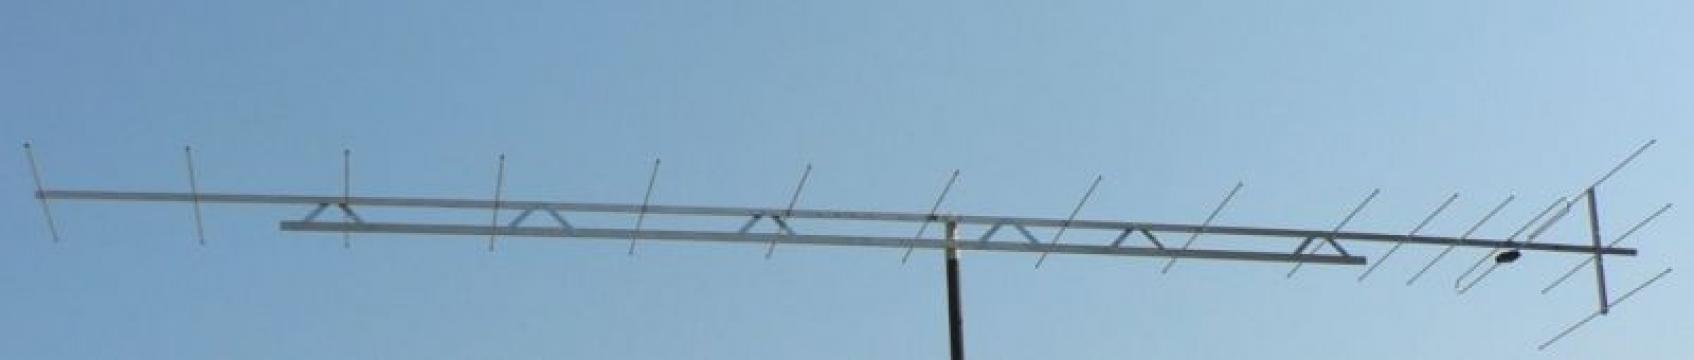 Antena pentru amplificare semnal 430-440 Mhz/70cm 17.7dbi de la SC Traiect SRL